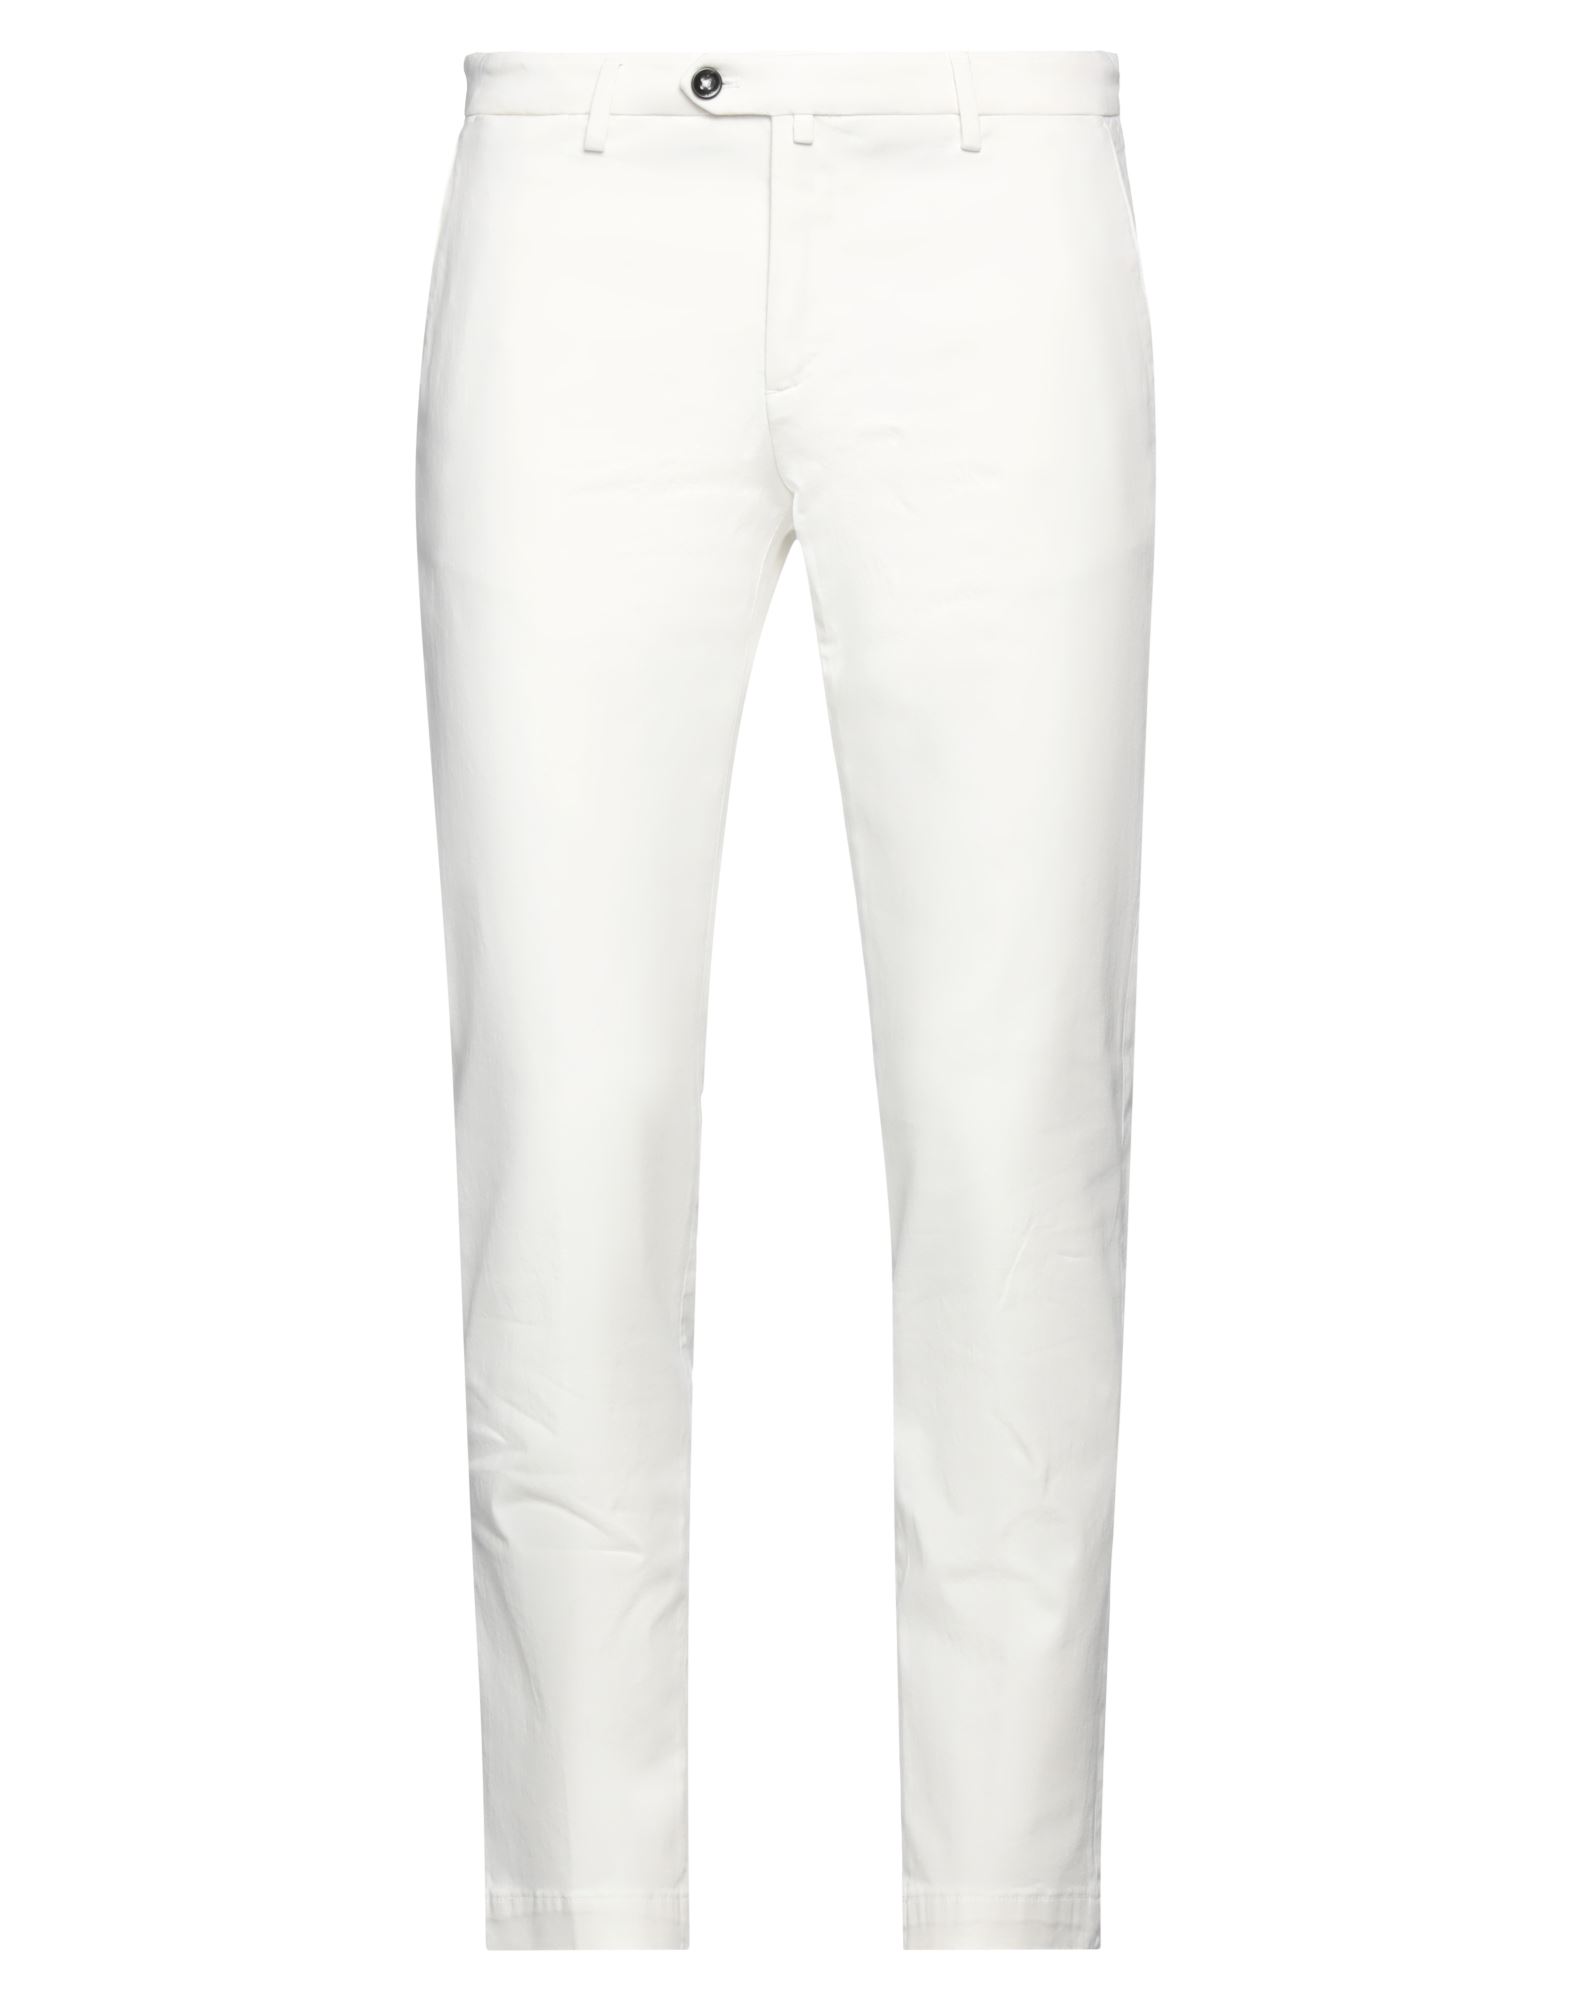 Briglia 1949 Man Pants White Size 32 Cotton, Elastane